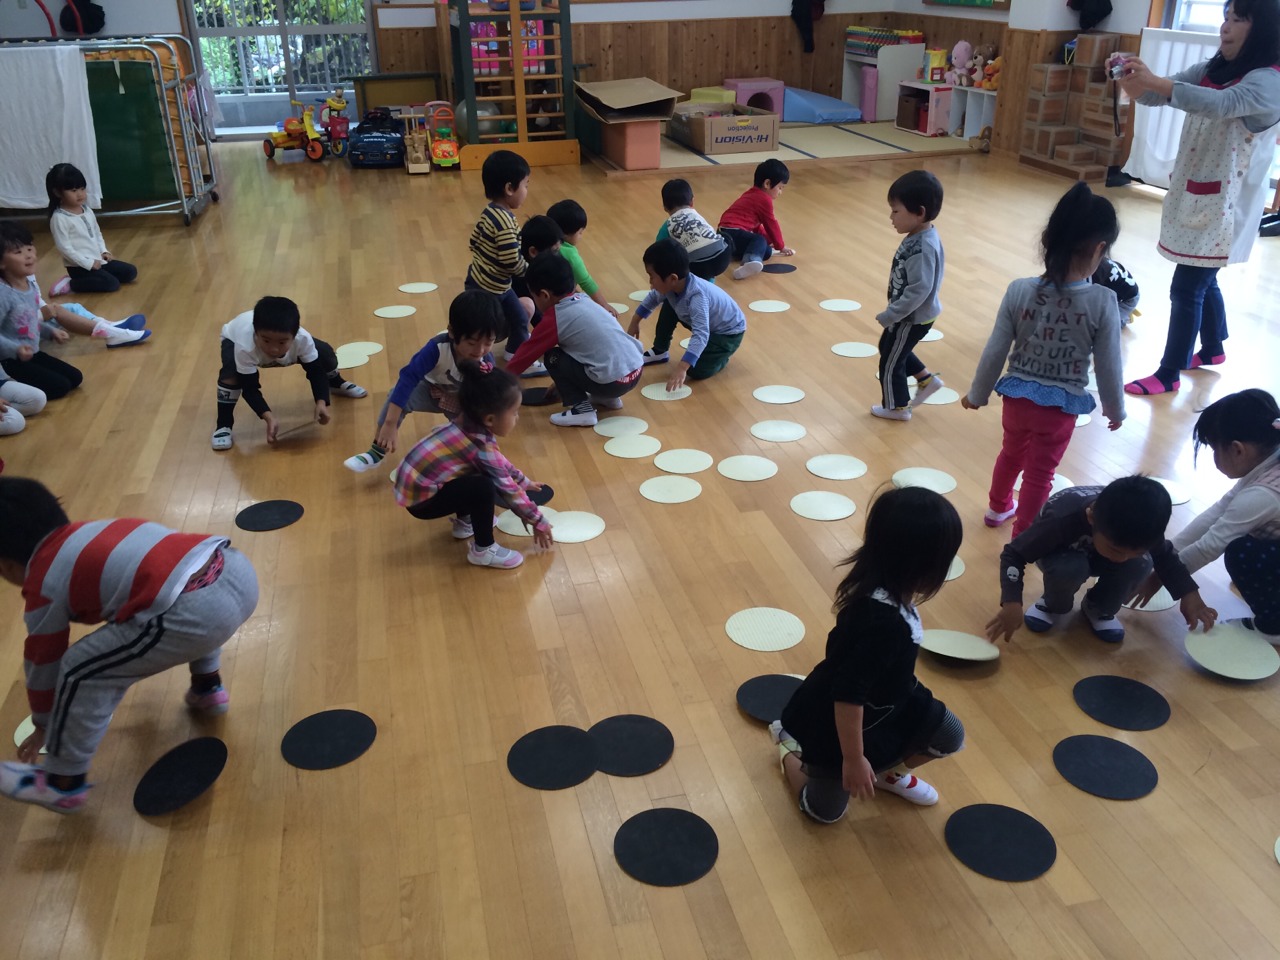 古里保育園のブログ ゲーム遊び 3歳児4歳児